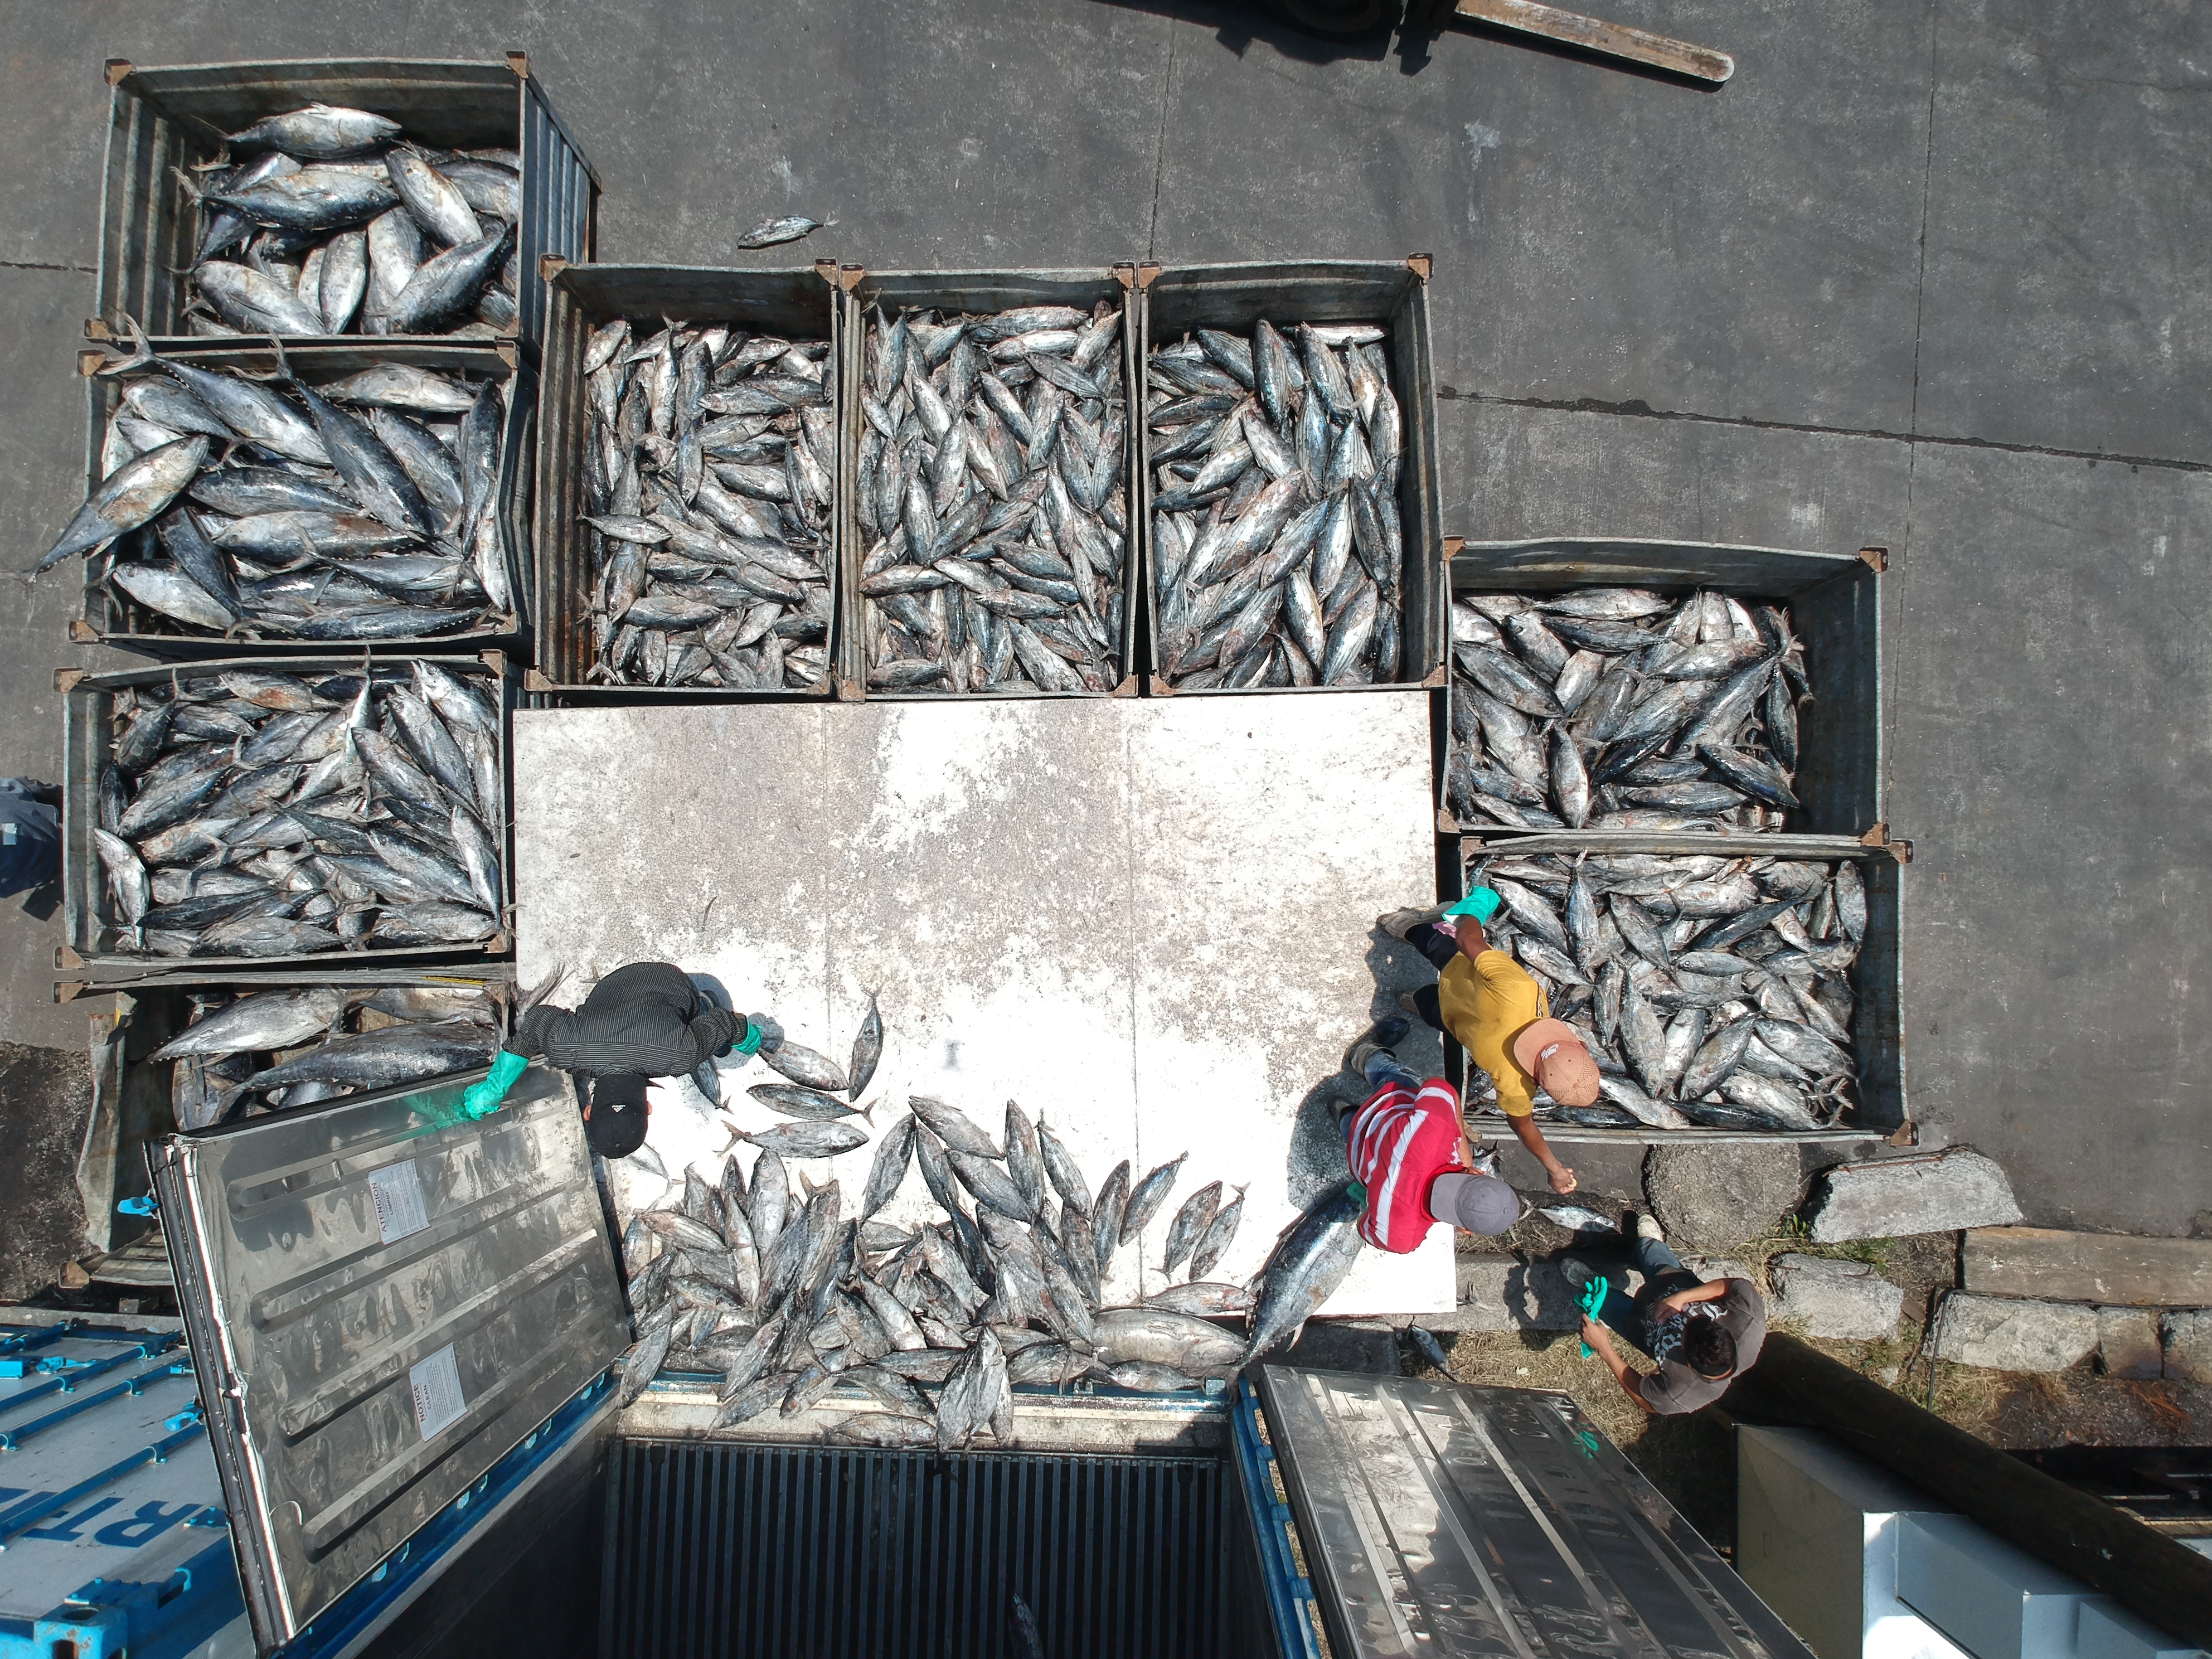 La filial de la española Rianxeira en Guatemala invirtió Q23 millones en una nave industrial que utilizará los subproductos del atún y de los pescadores artesanales. (Foto Prensa Libre: Carlos Hernández Ovalle)